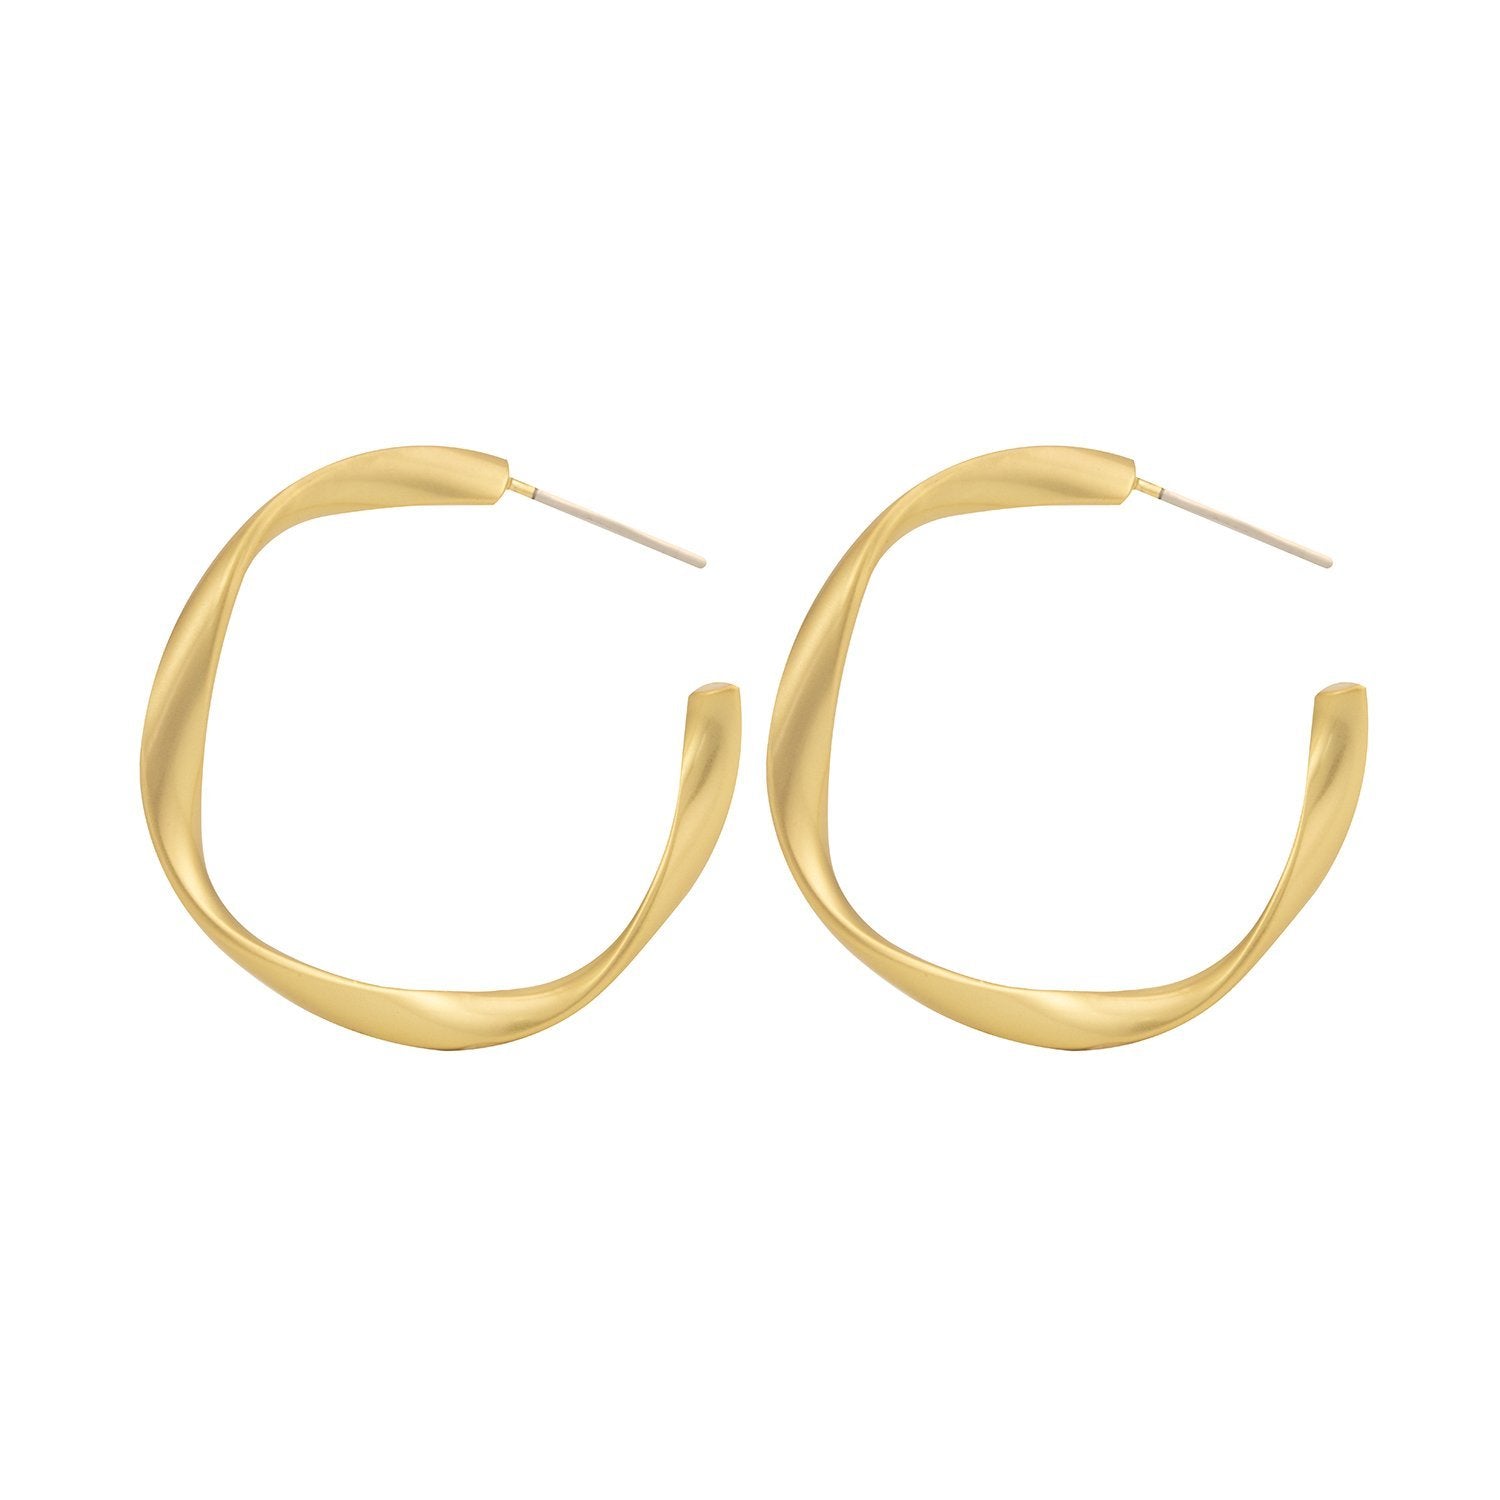 Petra 35mm Twist Hoop Earrings, Matte Gold - Zahra Jewelry